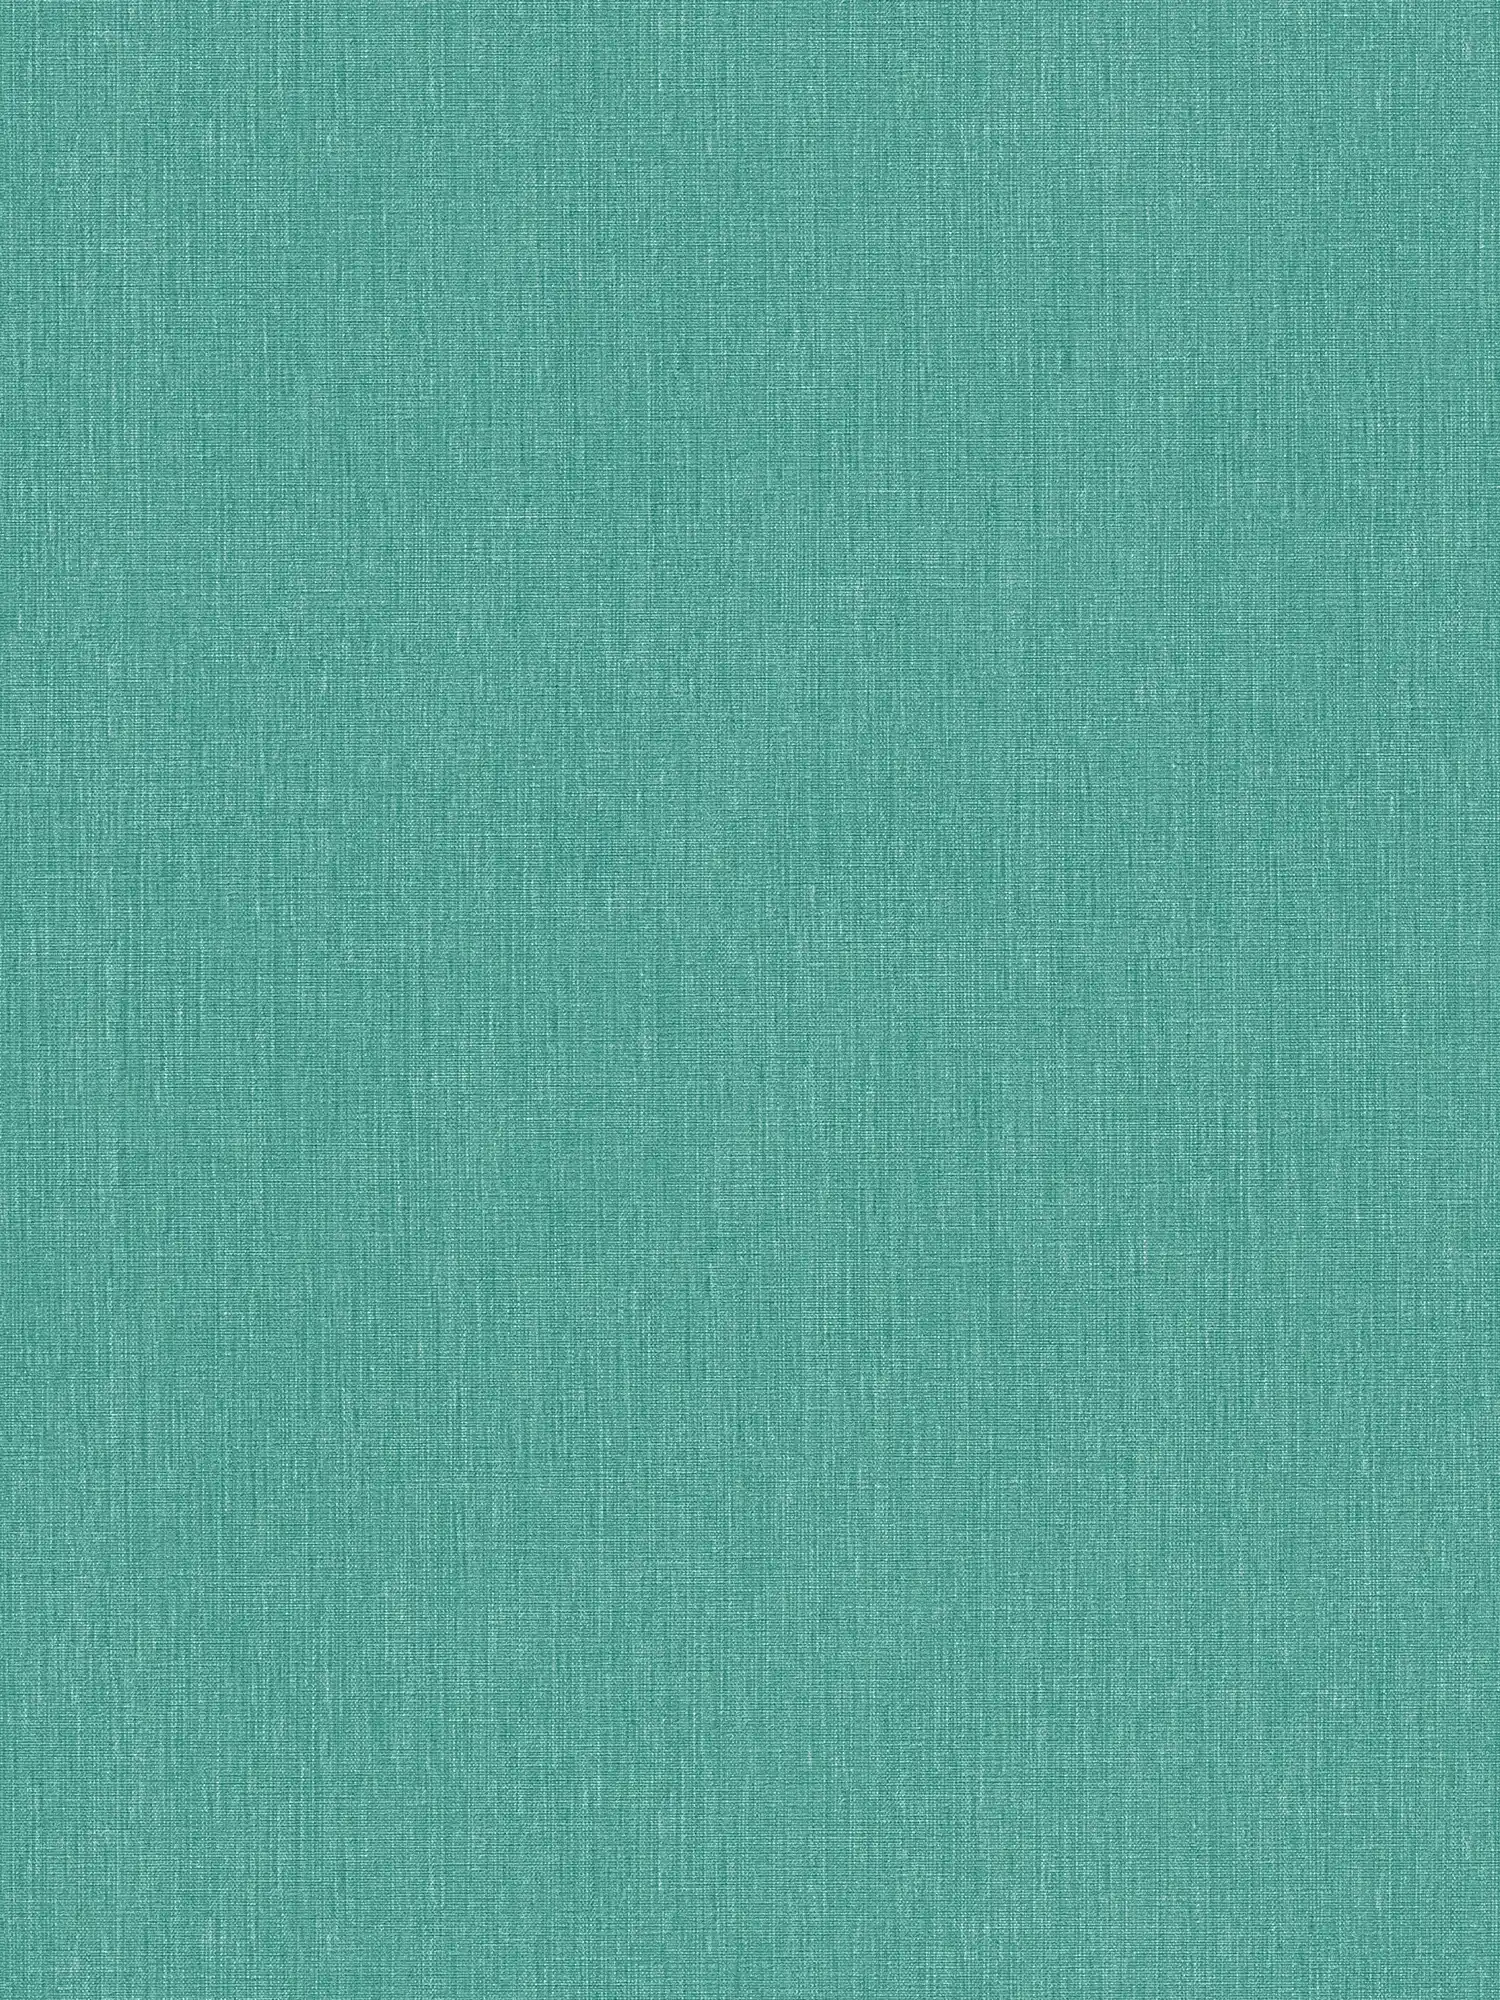 Carta da parati unitaria con texture su tessuto non tessuto in aspetto opaco - verde, blu
